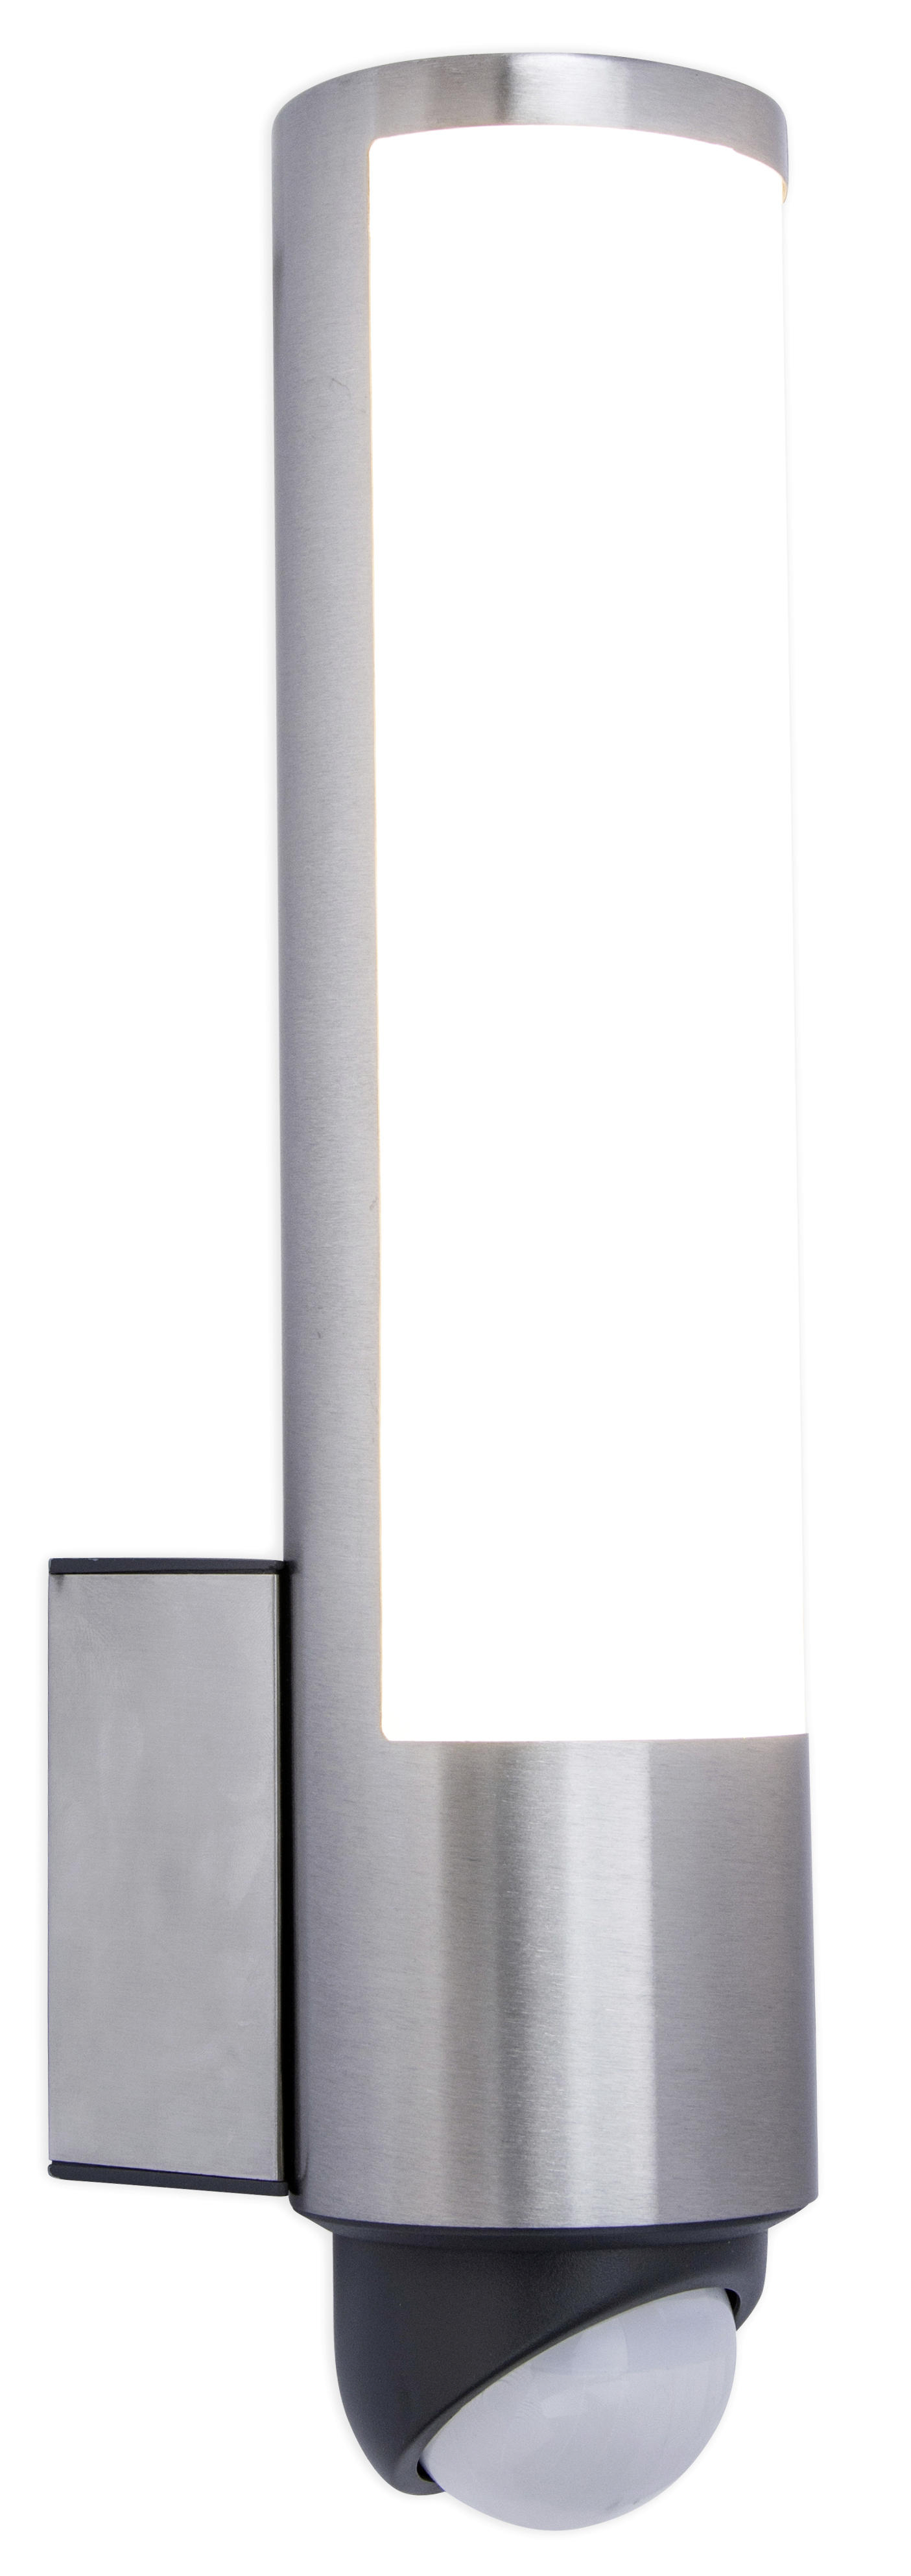 AUßENWANDLEUCHTE LEDA   - Edelstahlfarben/Weiß, Design, Kunststoff/Metall (34,50/7,60/11,60cm)